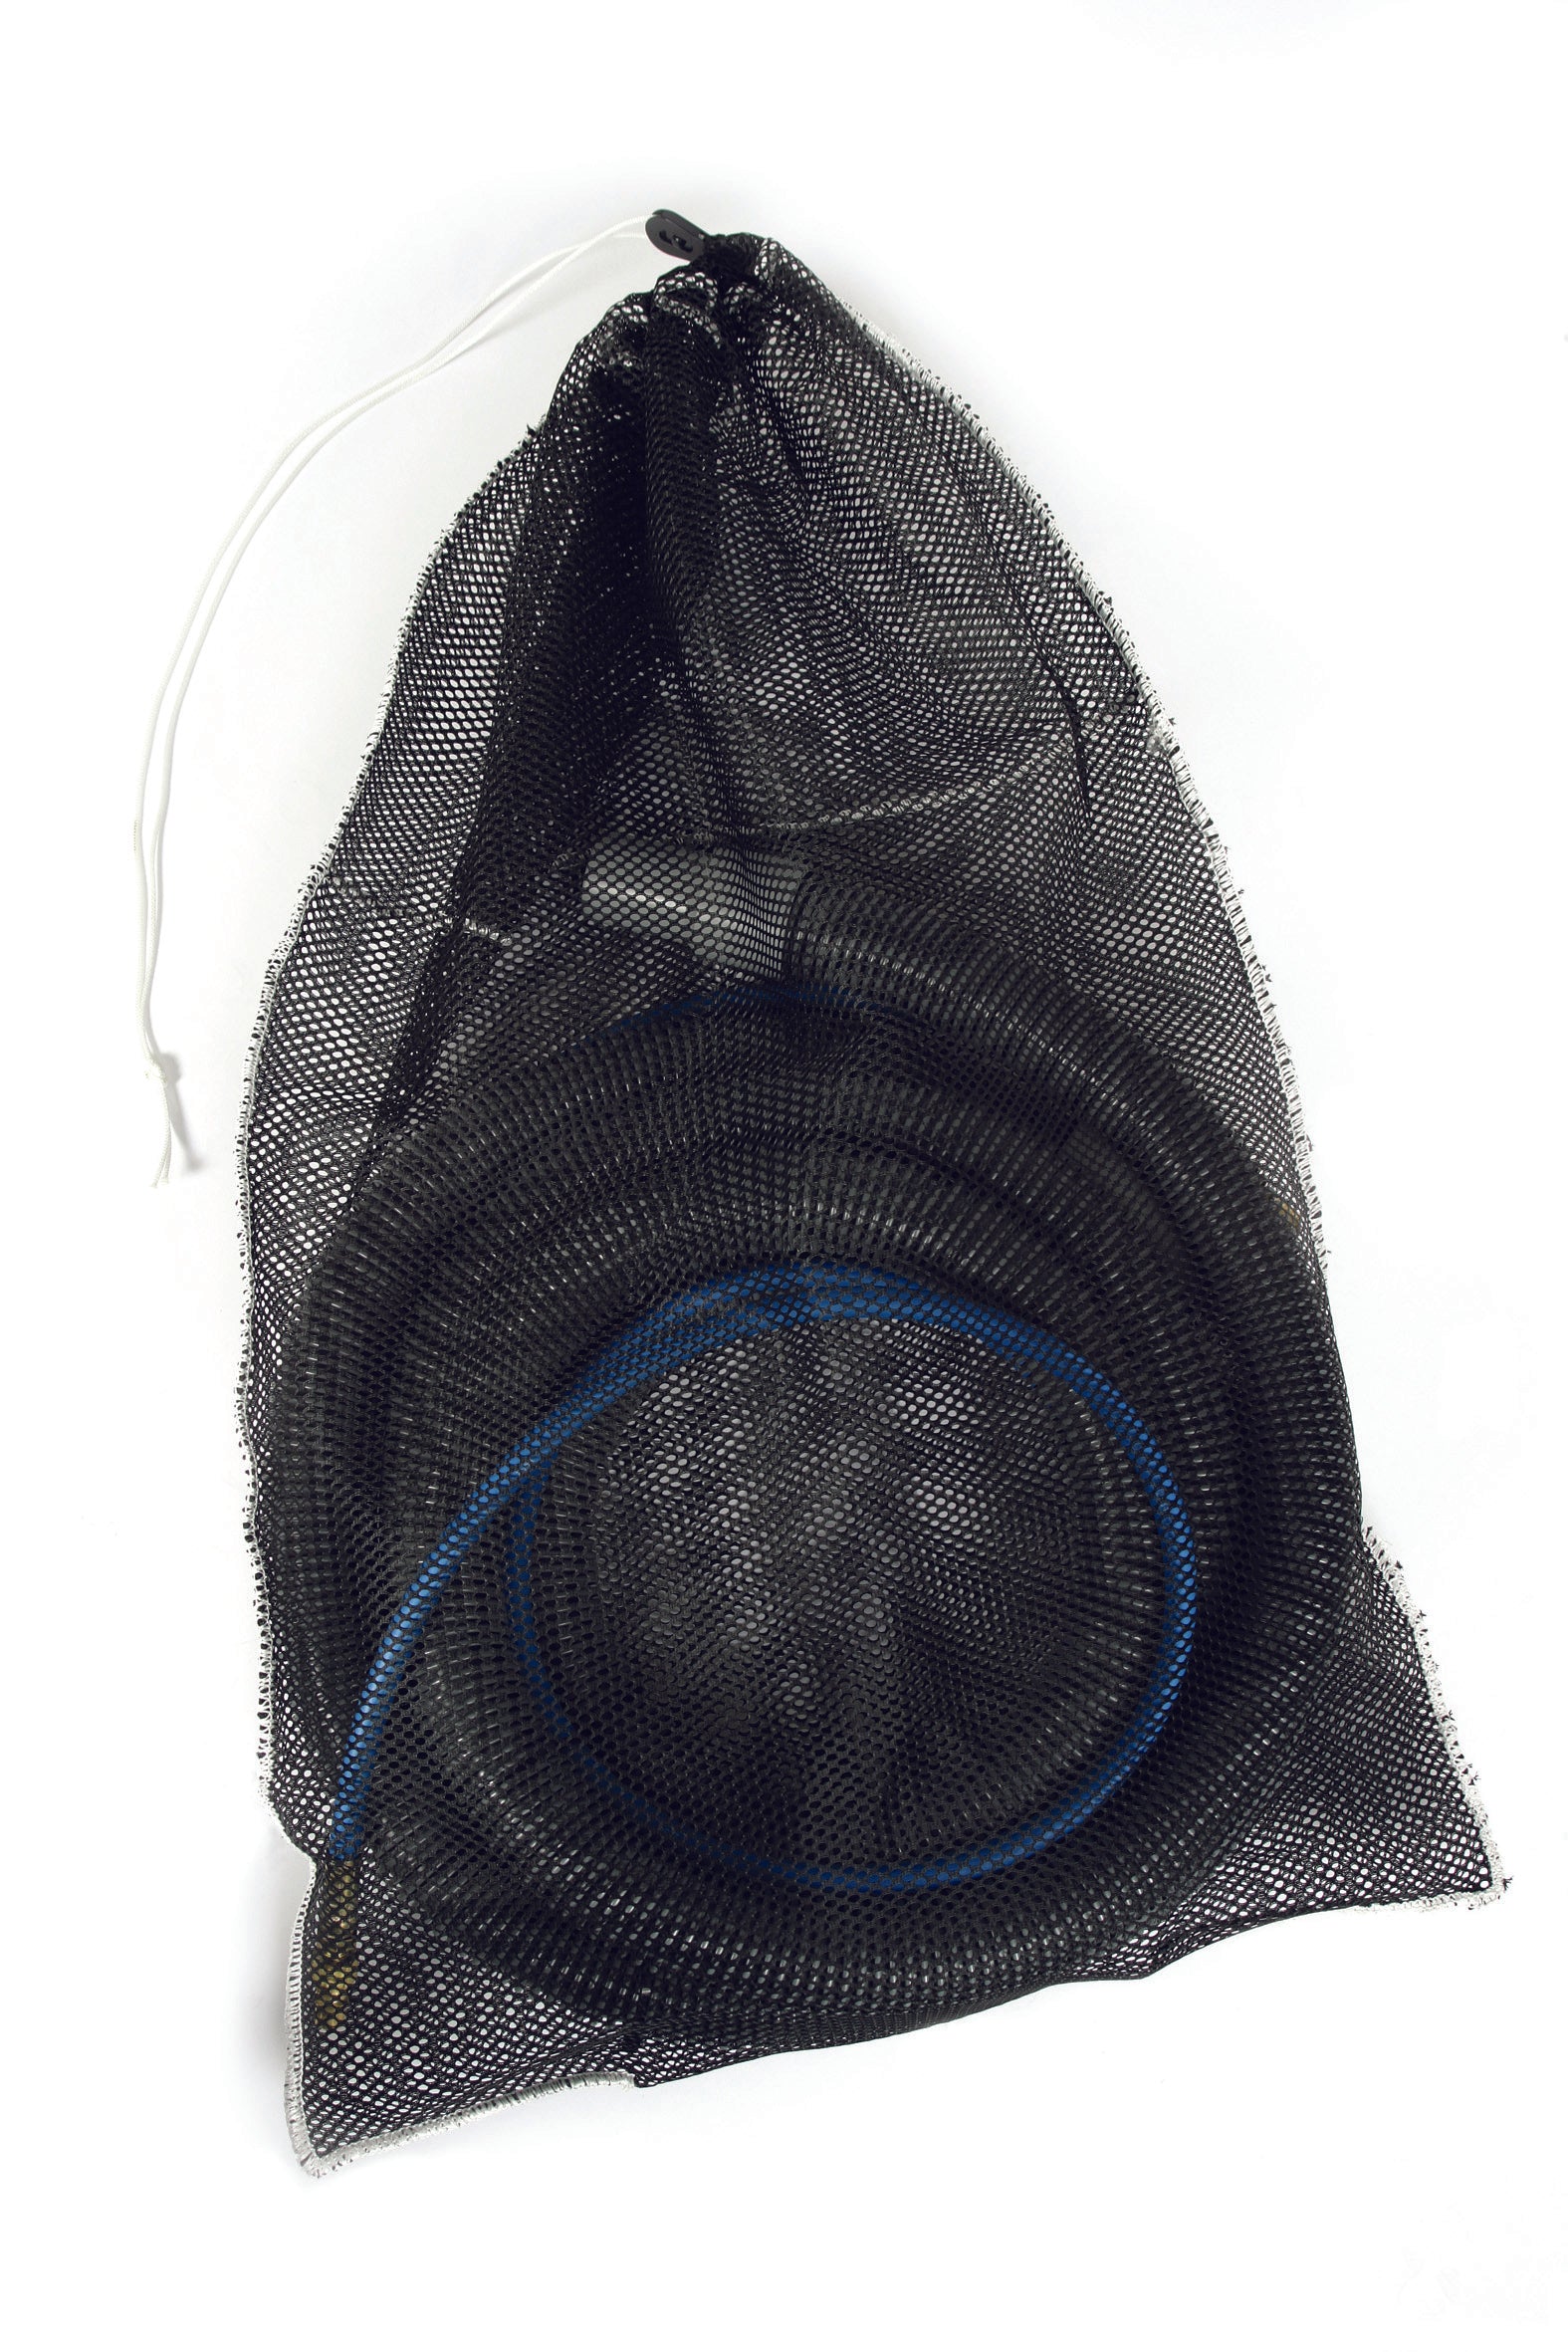 Prochem AC1045 Mesh hose carry bag (for Comet & Fivestar hand tool AC322)